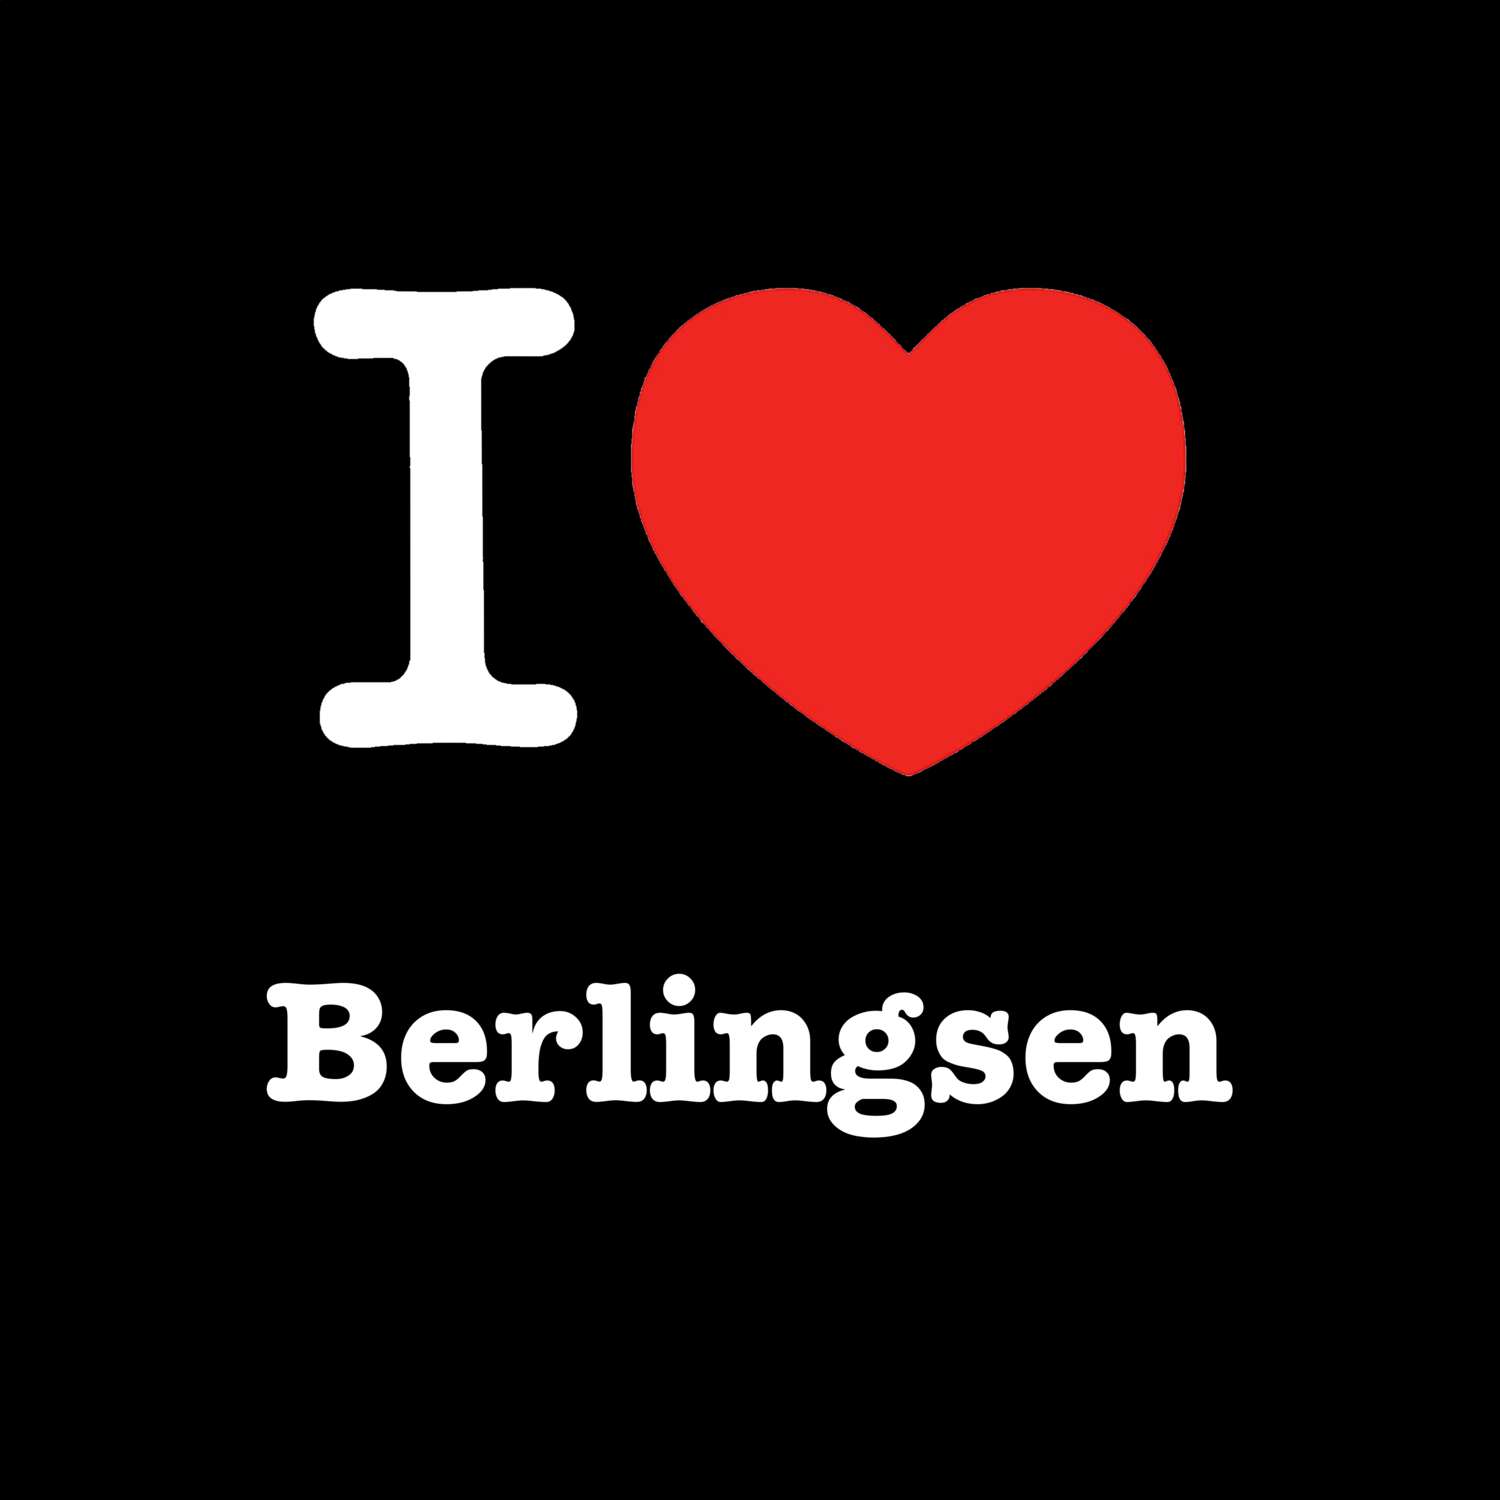 Berlingsen T-Shirt »I love«